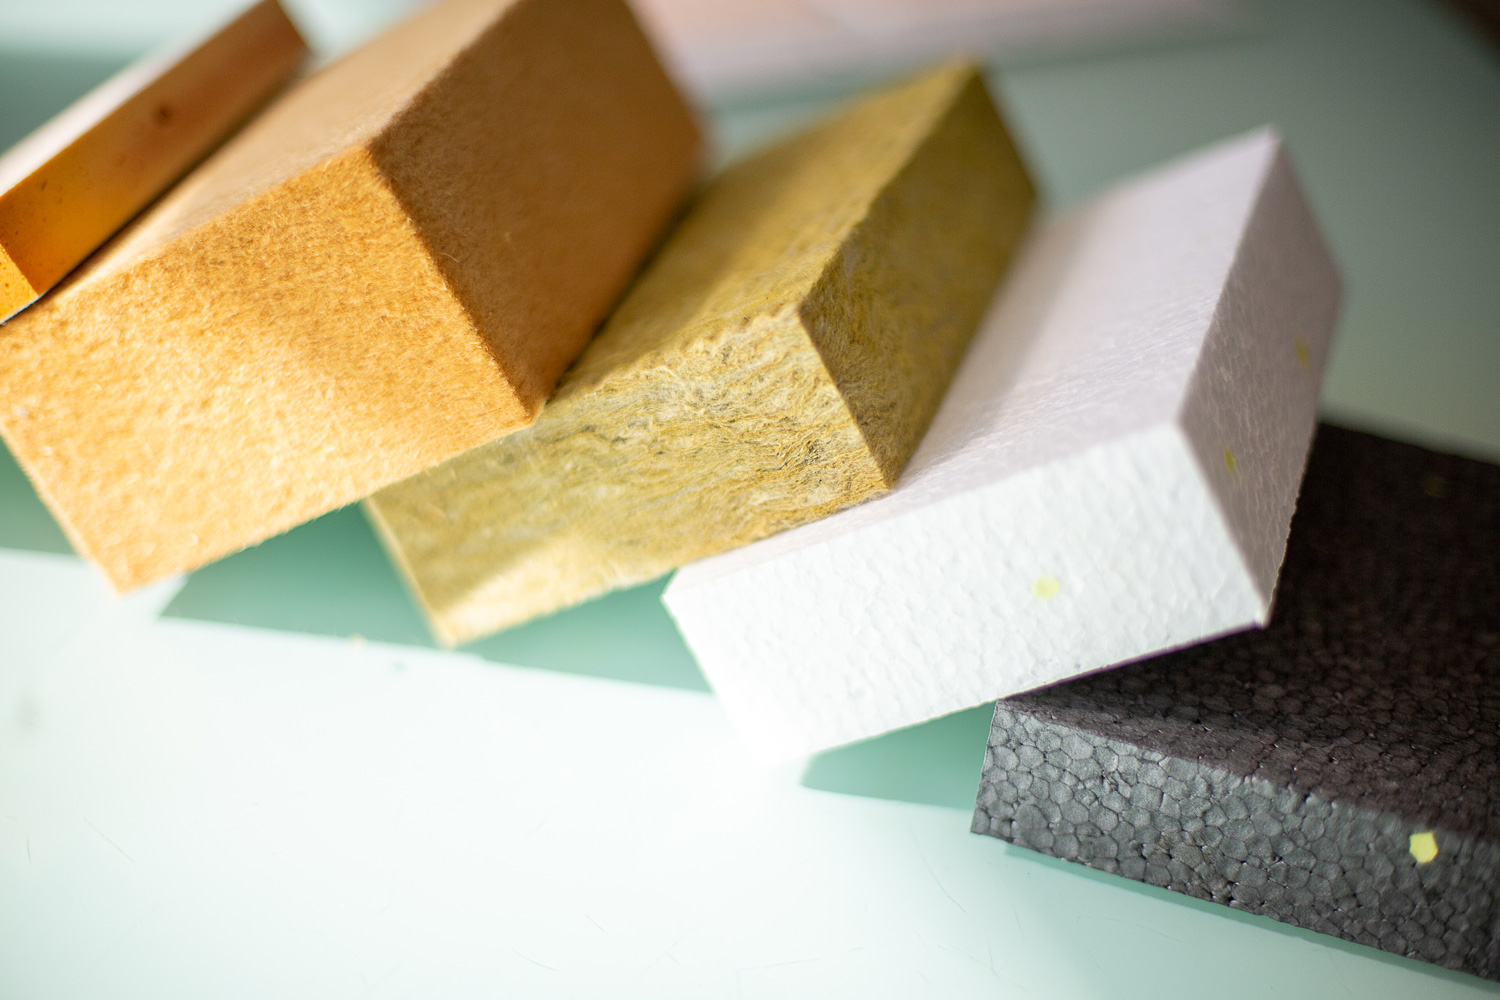 Des échantillons d'isolant pour mur disposés sur une surface, représentant différentes options de matériaux isolants pour les murs.